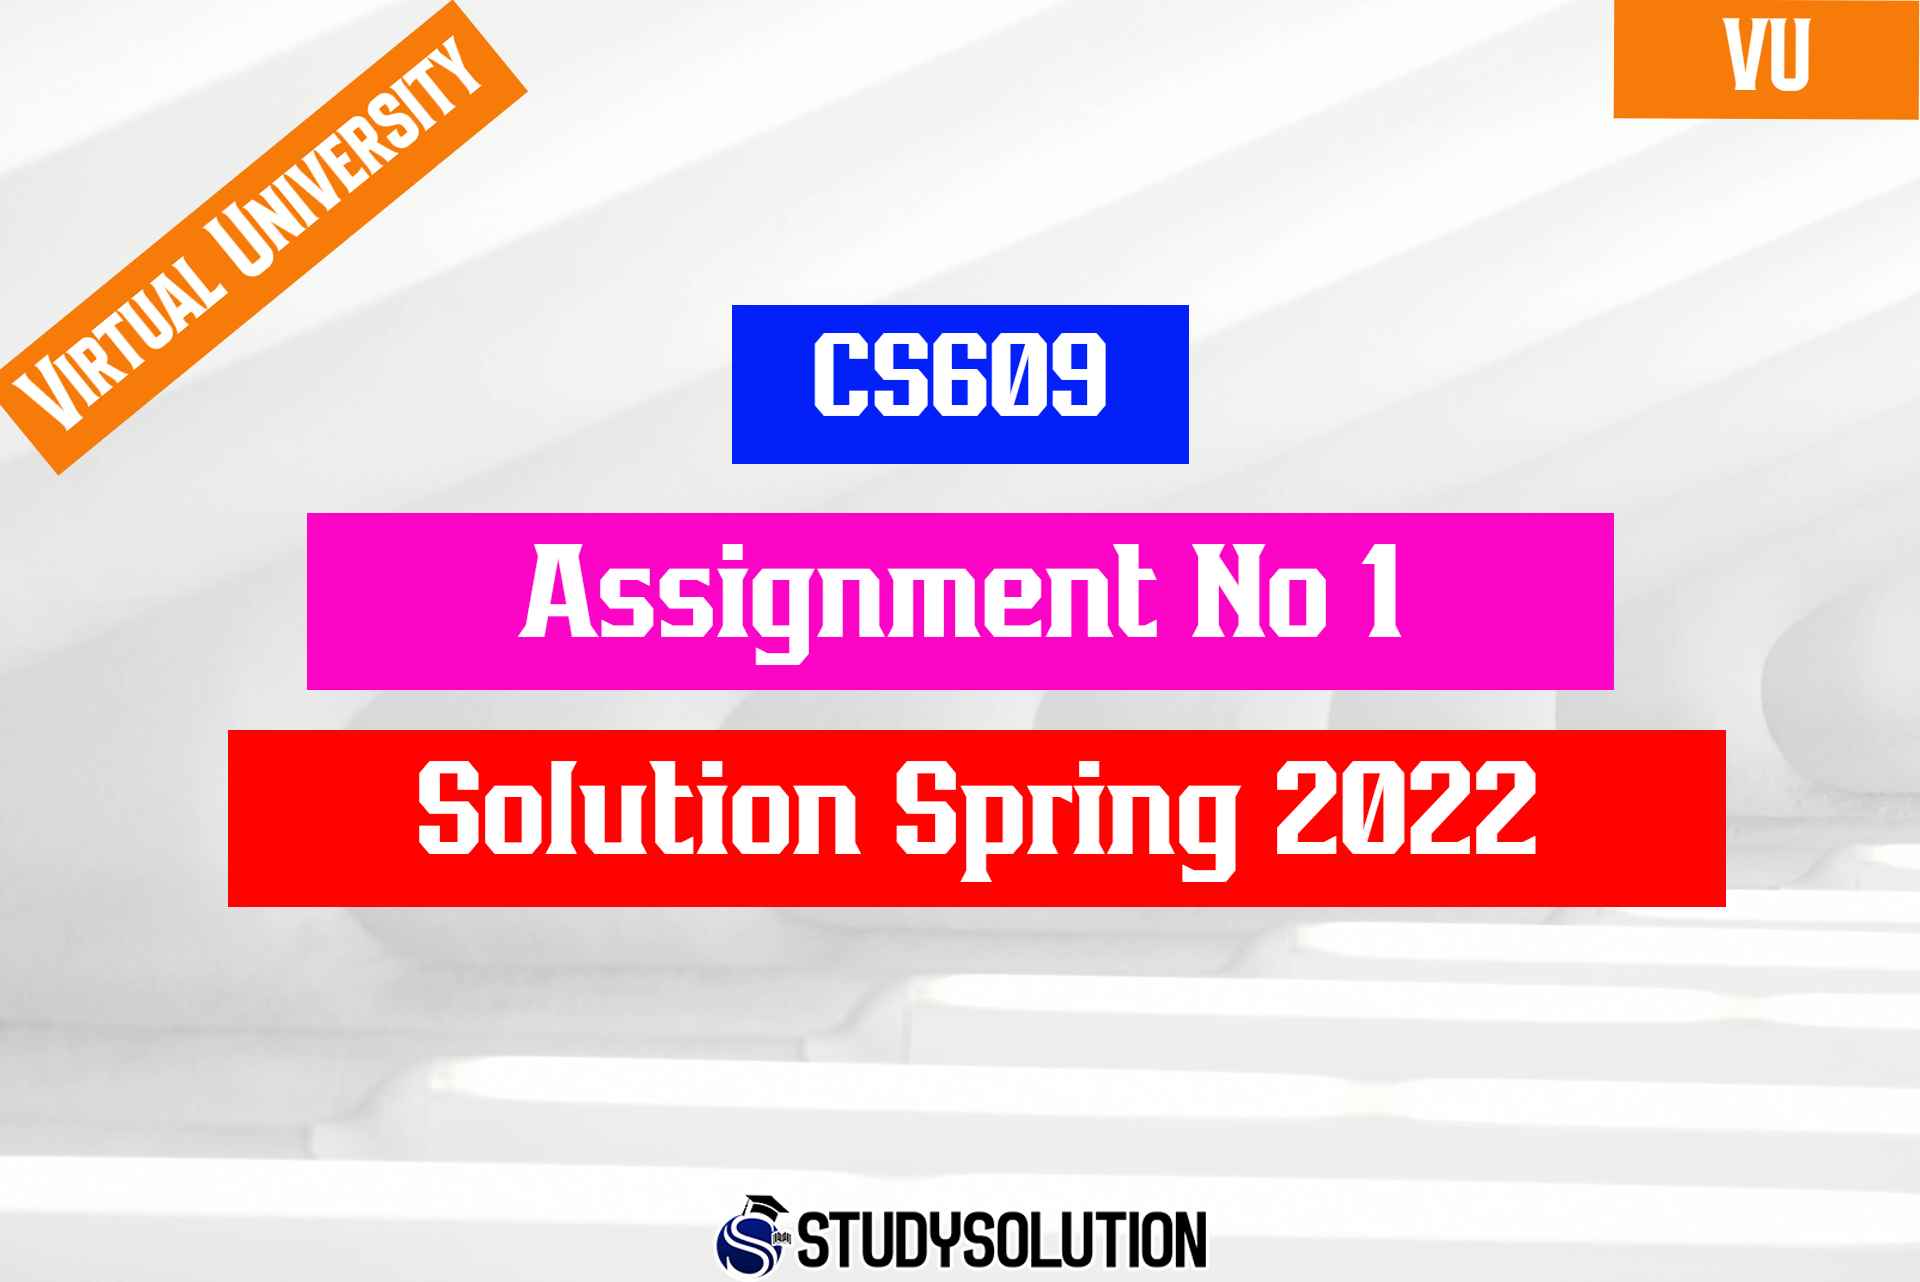 CS609 Assignment No 1 Solution Spring 2022